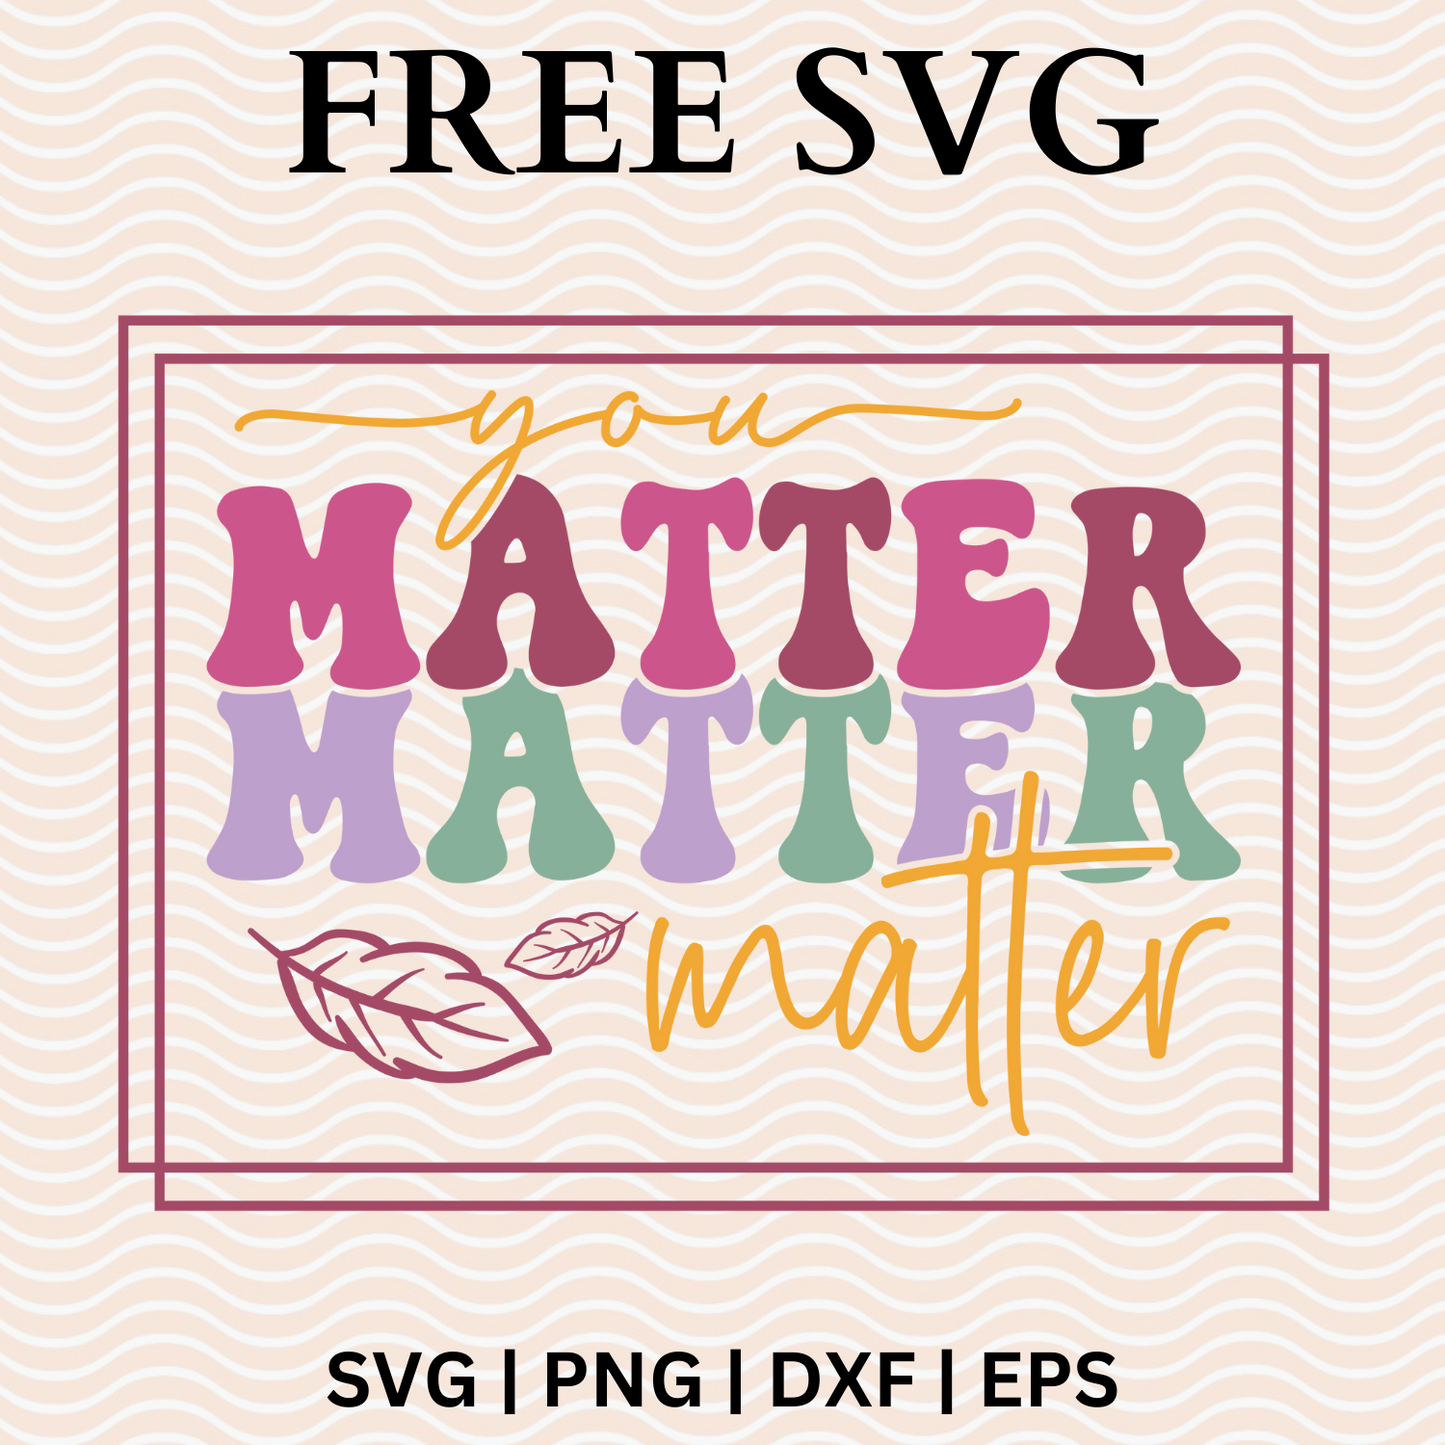 You Matter Matter Matter SVG Free File For Cricut & PNG Download-8SVG